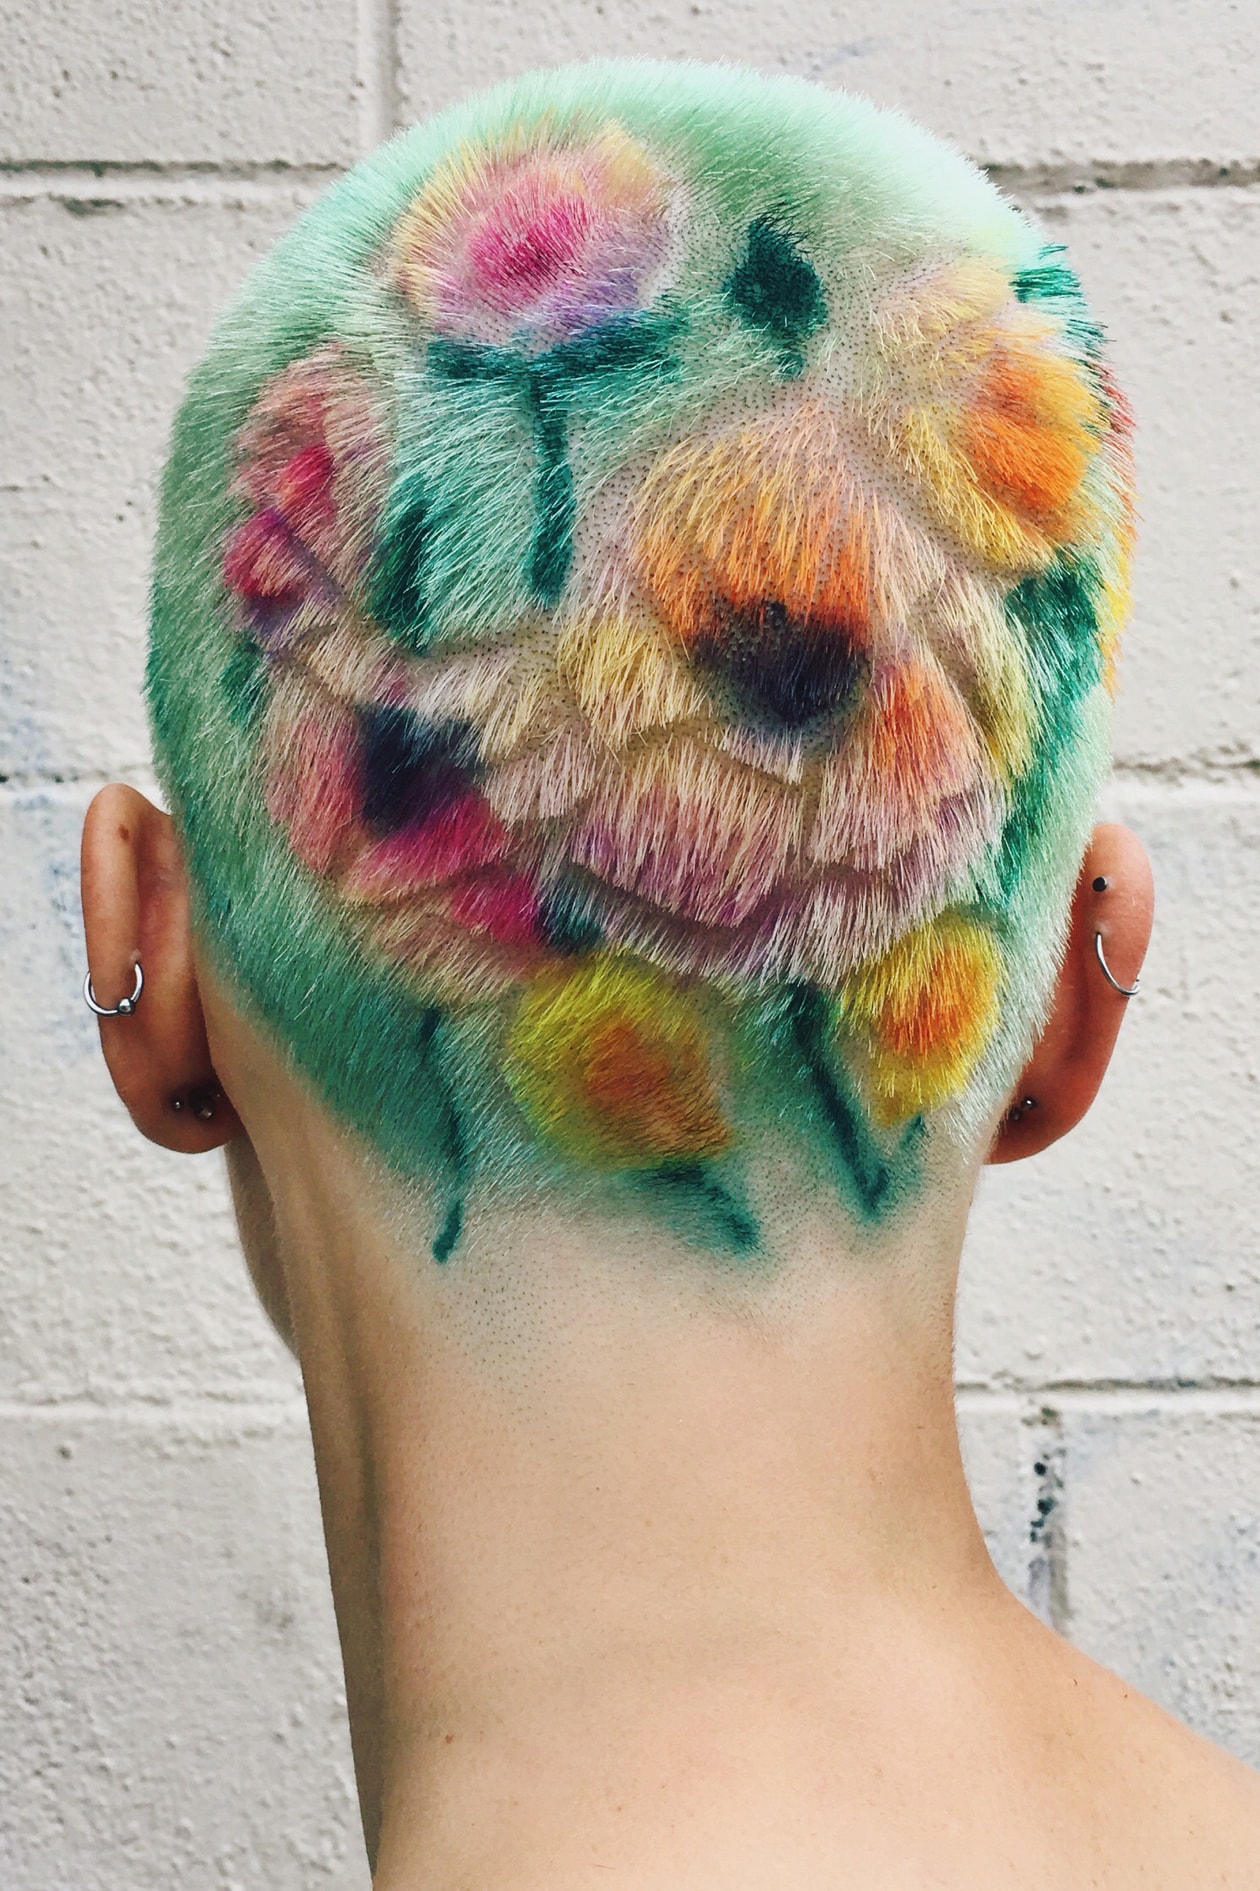 「头发有点像指纹，是每个人独特的象征」| 专访发型艺术家 Janine Ker 